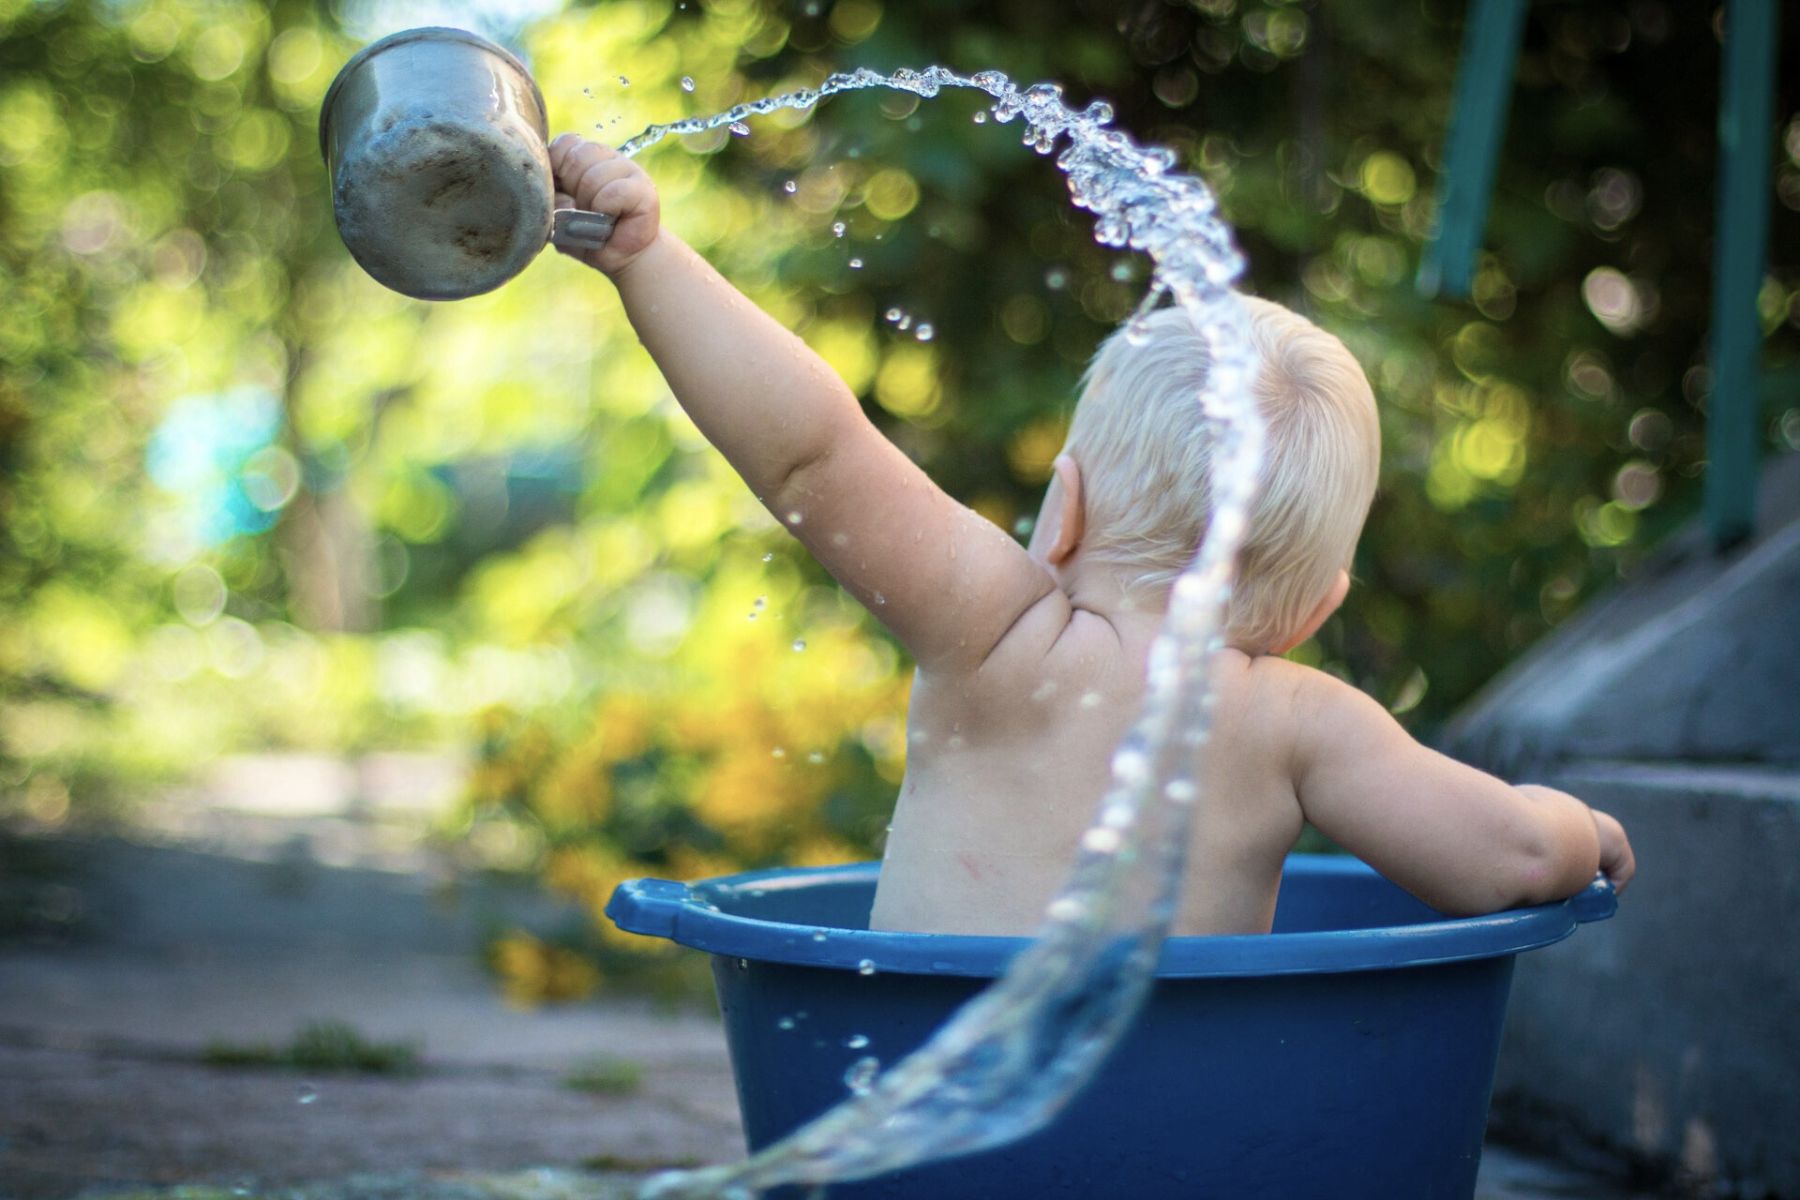 Ein Kleinkind badet in einem Eimer sitzend und giesst in hohem Bogen Wasser in die Luft. Spiel jetzt unser Badi Bullshit Bingo für Eltern!